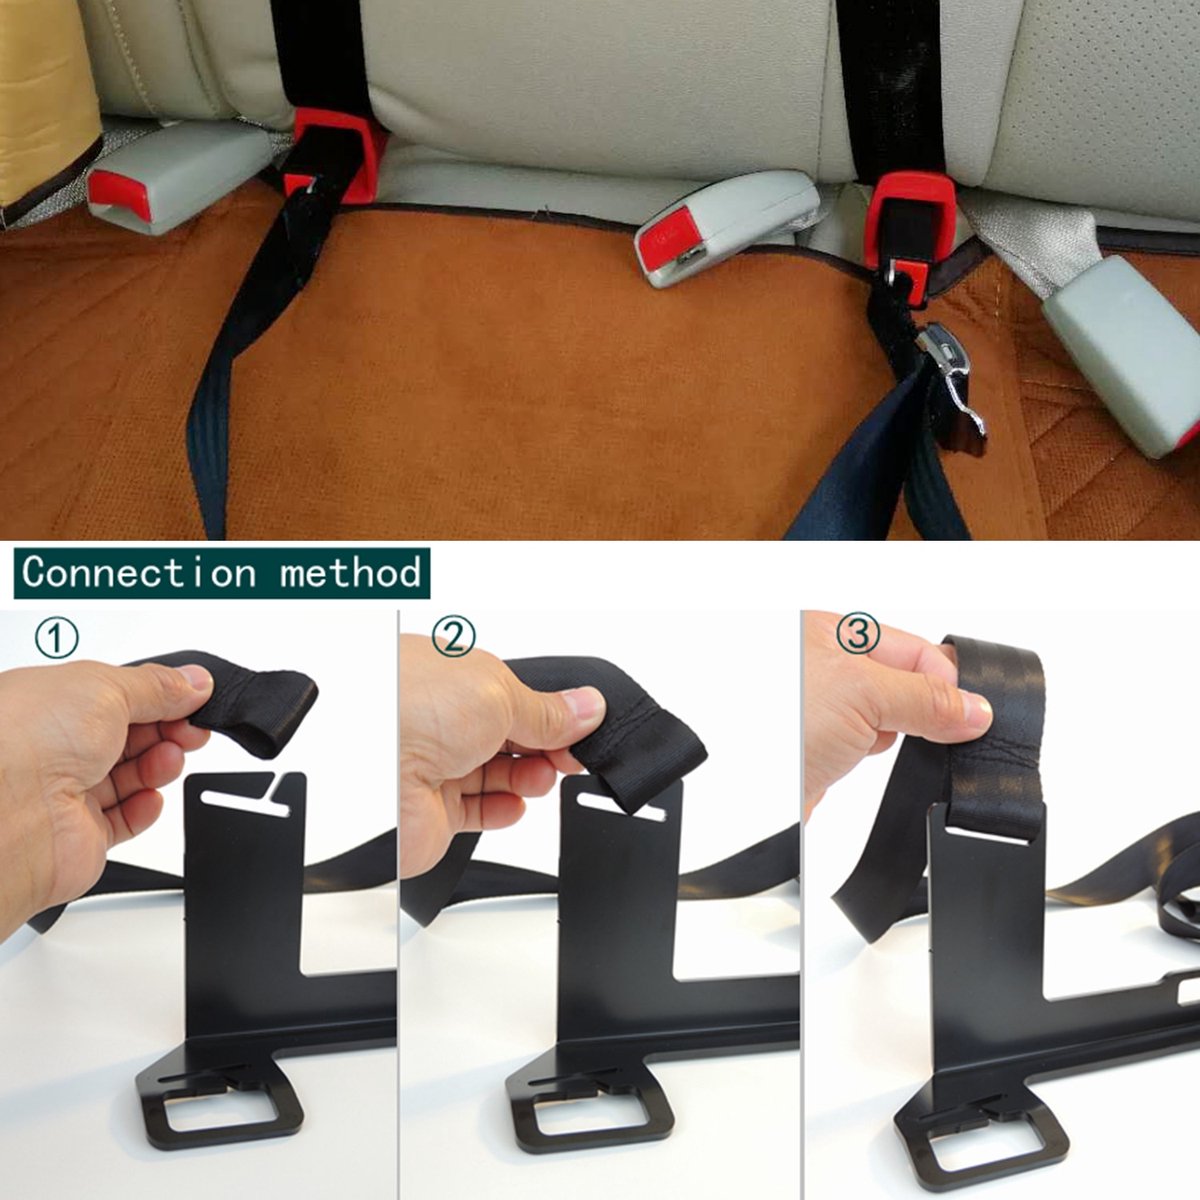 Pour connecteur Isofix pour siège de sécurité enfant Siège Siège Verrou  Guide Dispositif de retenue Interfaces Support ceinture de sécurité Boucle  Support